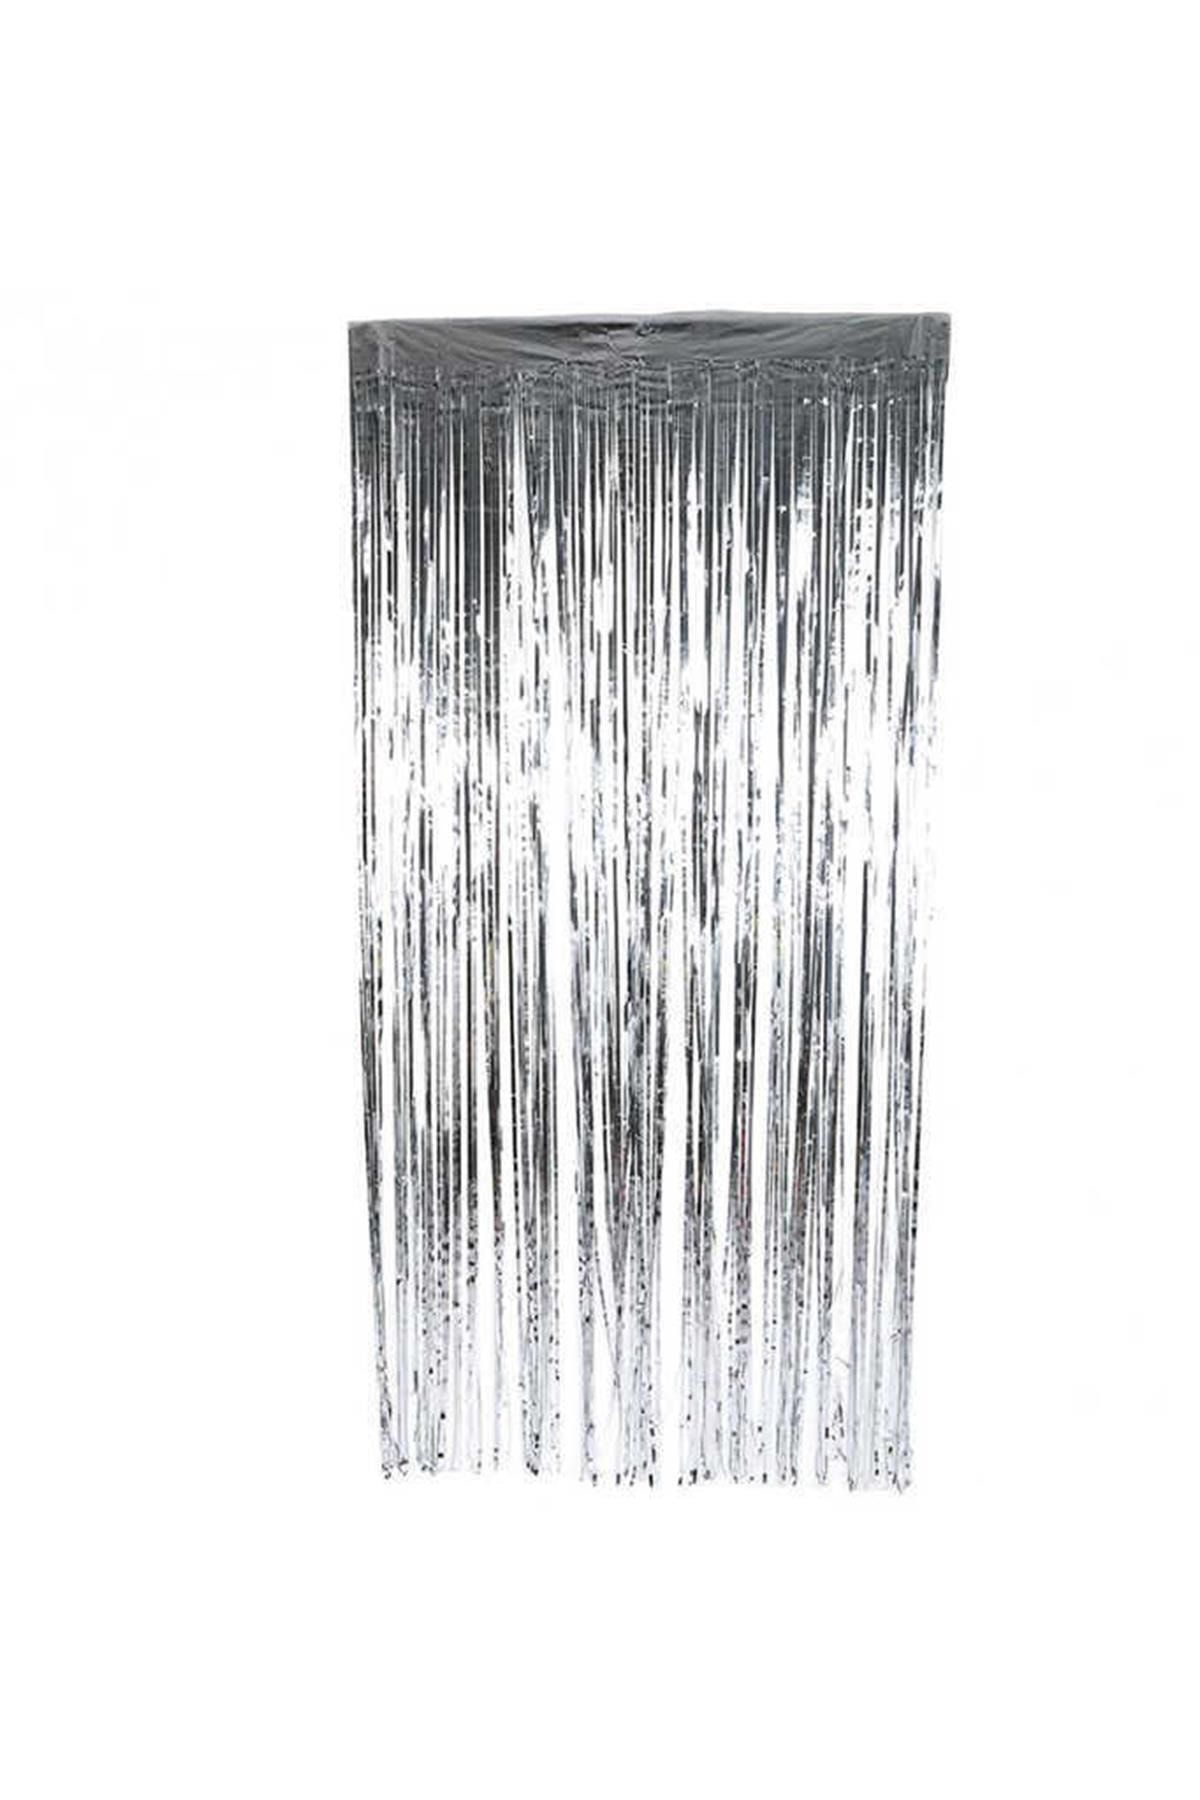 Genel Markalar Kapı Banner Simli  Gümüş Pakette  1 X 2 m.